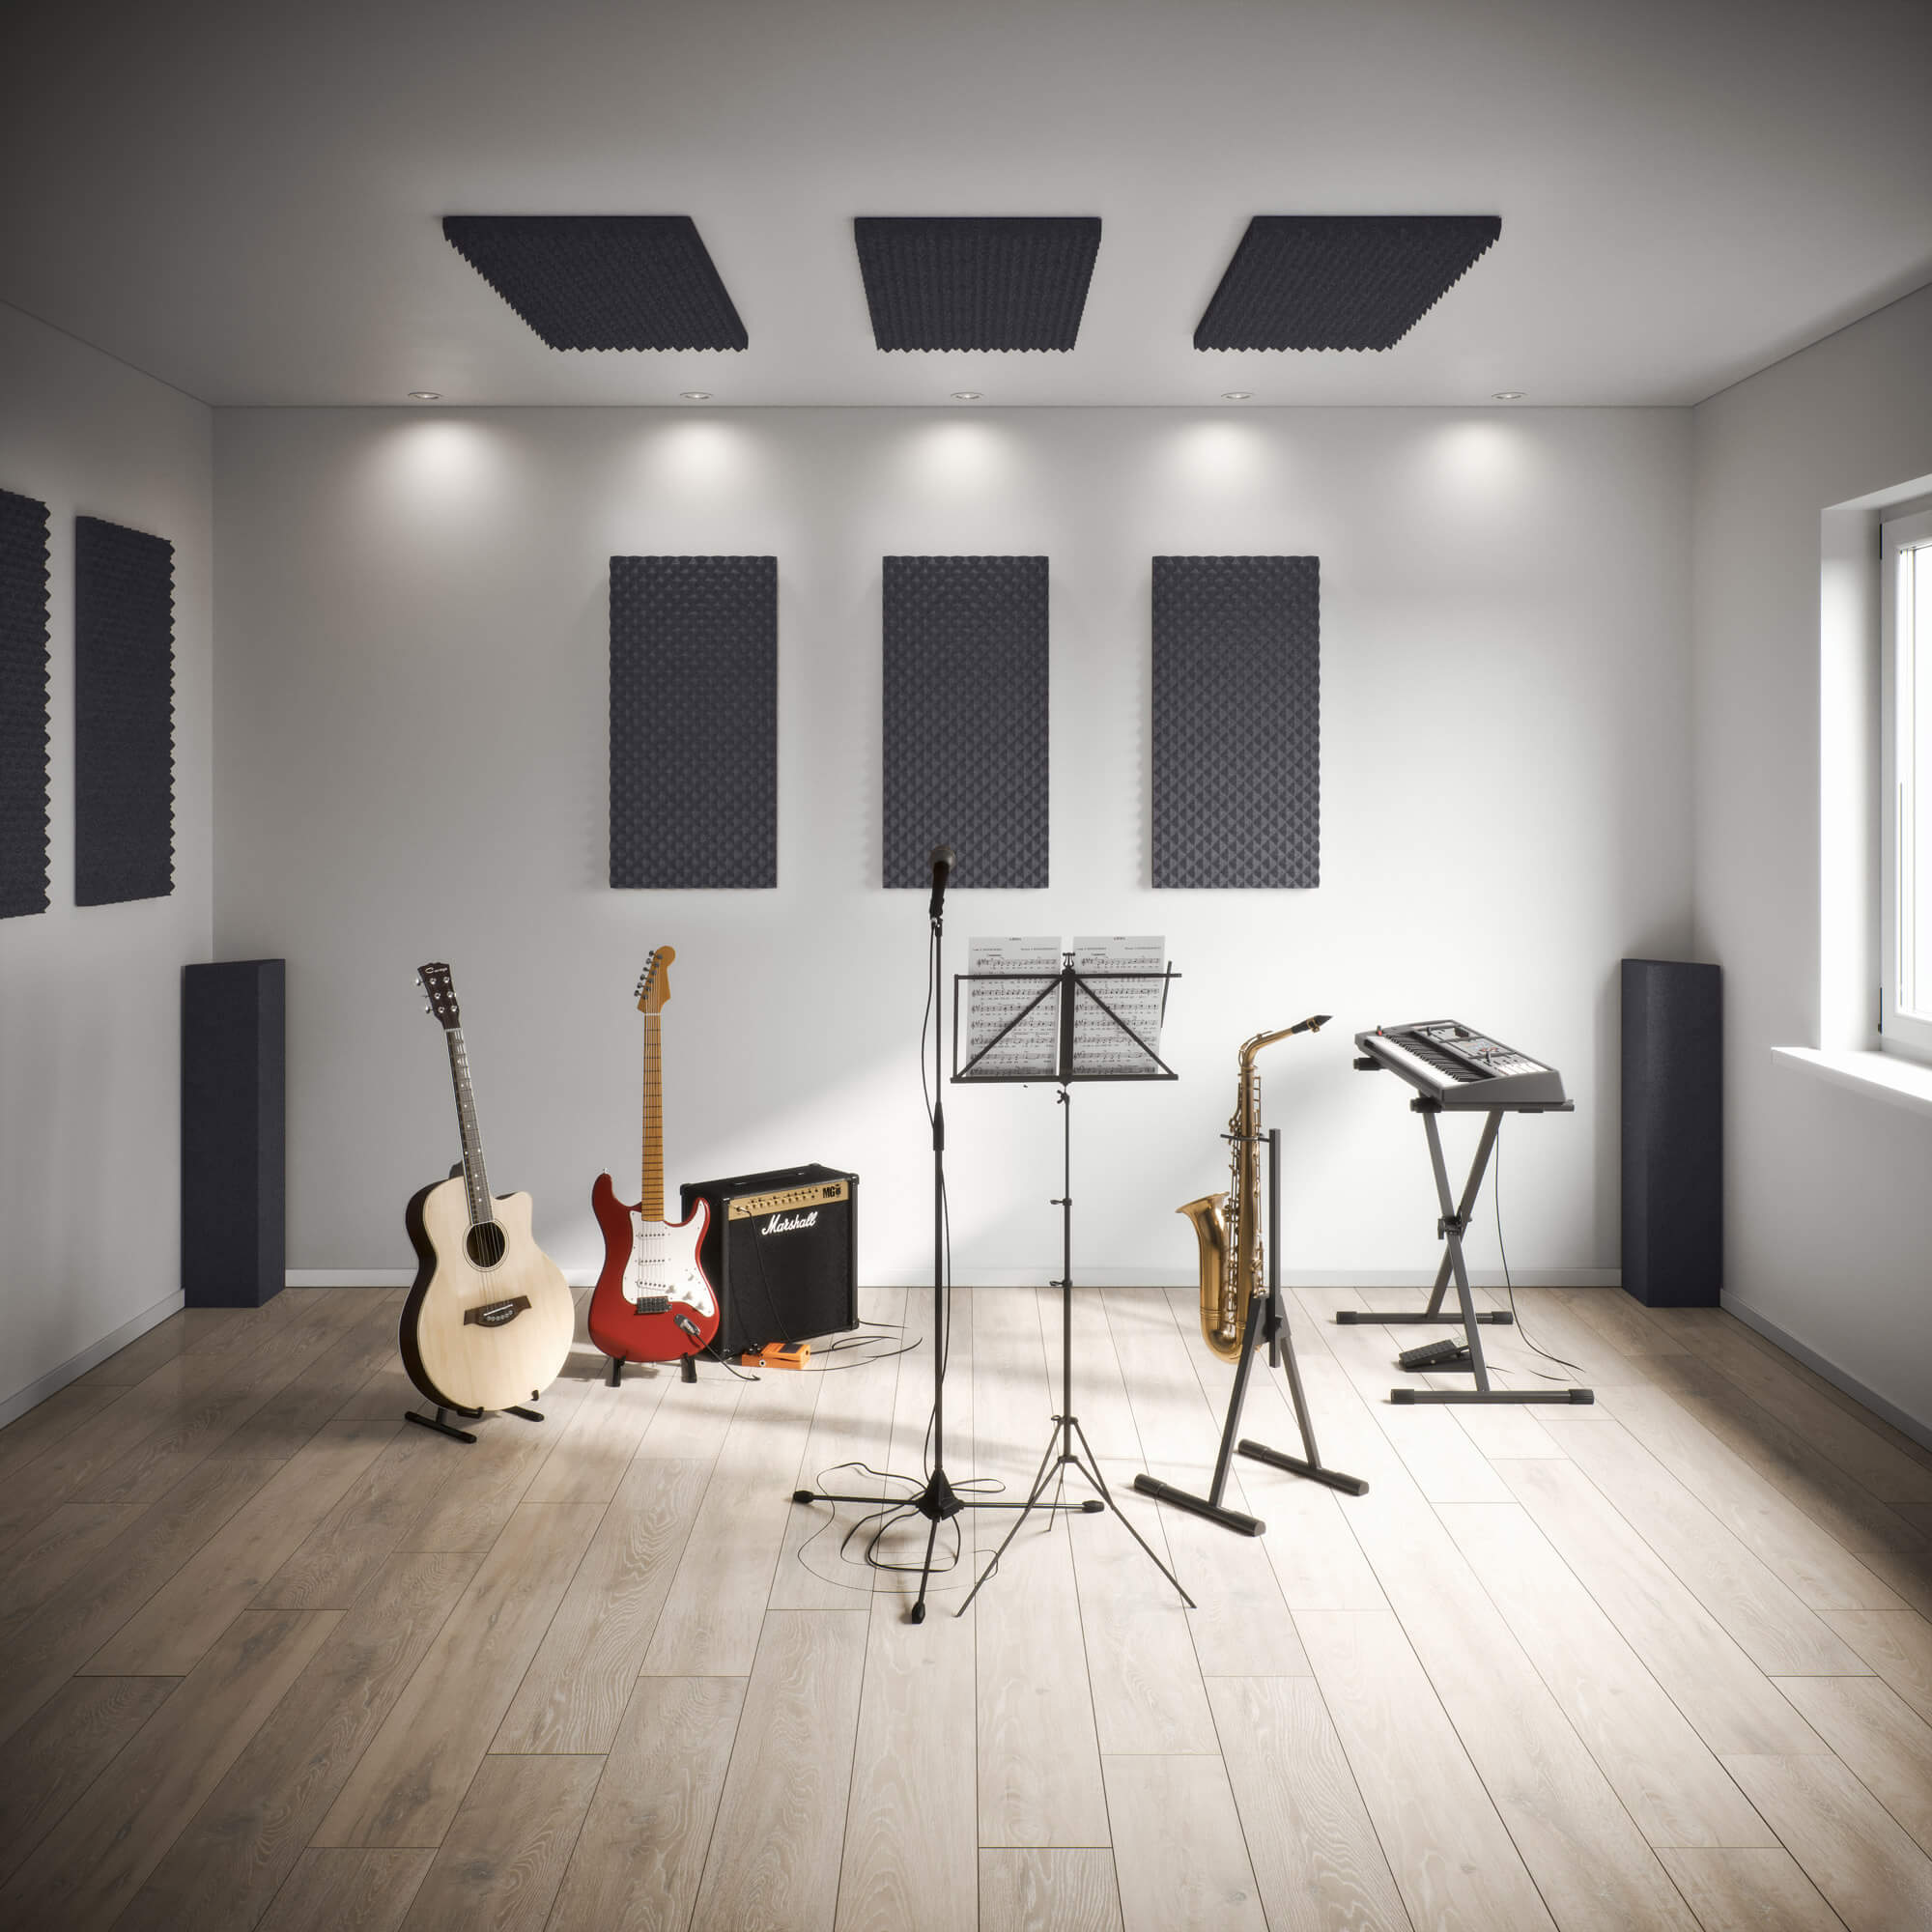 Ljuddampningsset For Musiker Optimal Akustik For Hobbymusiker Och Proffs